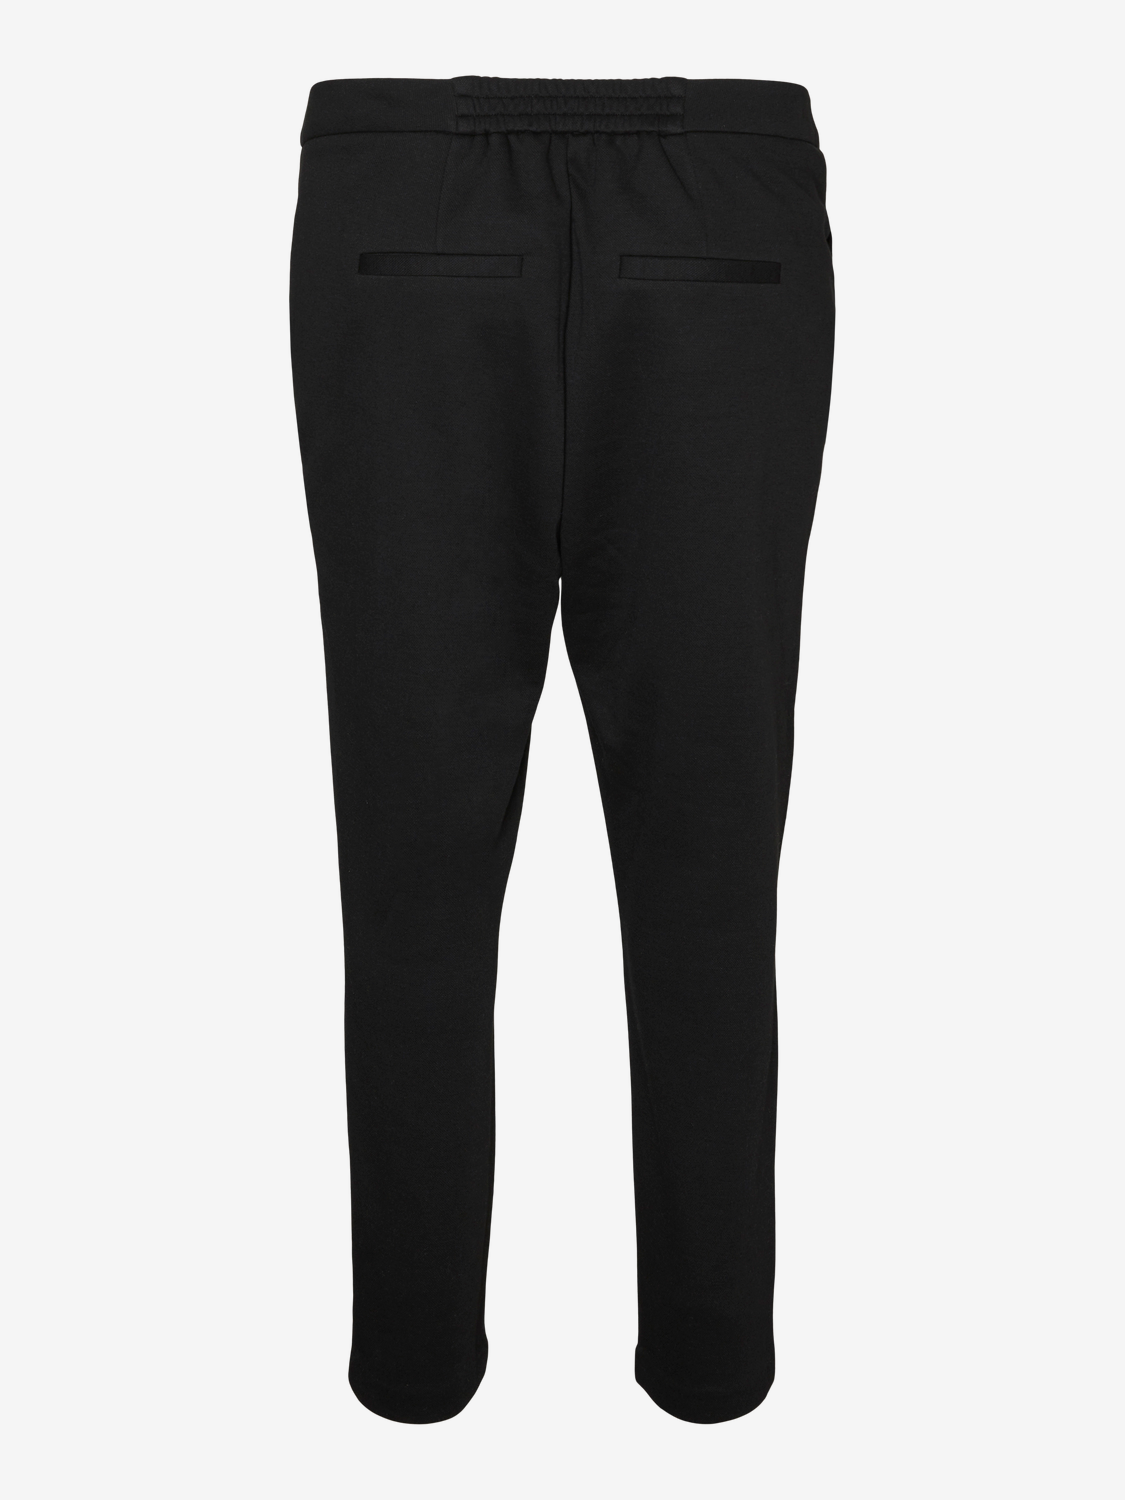 Vero Moda VMJULIA Trousers -Black - 10312937